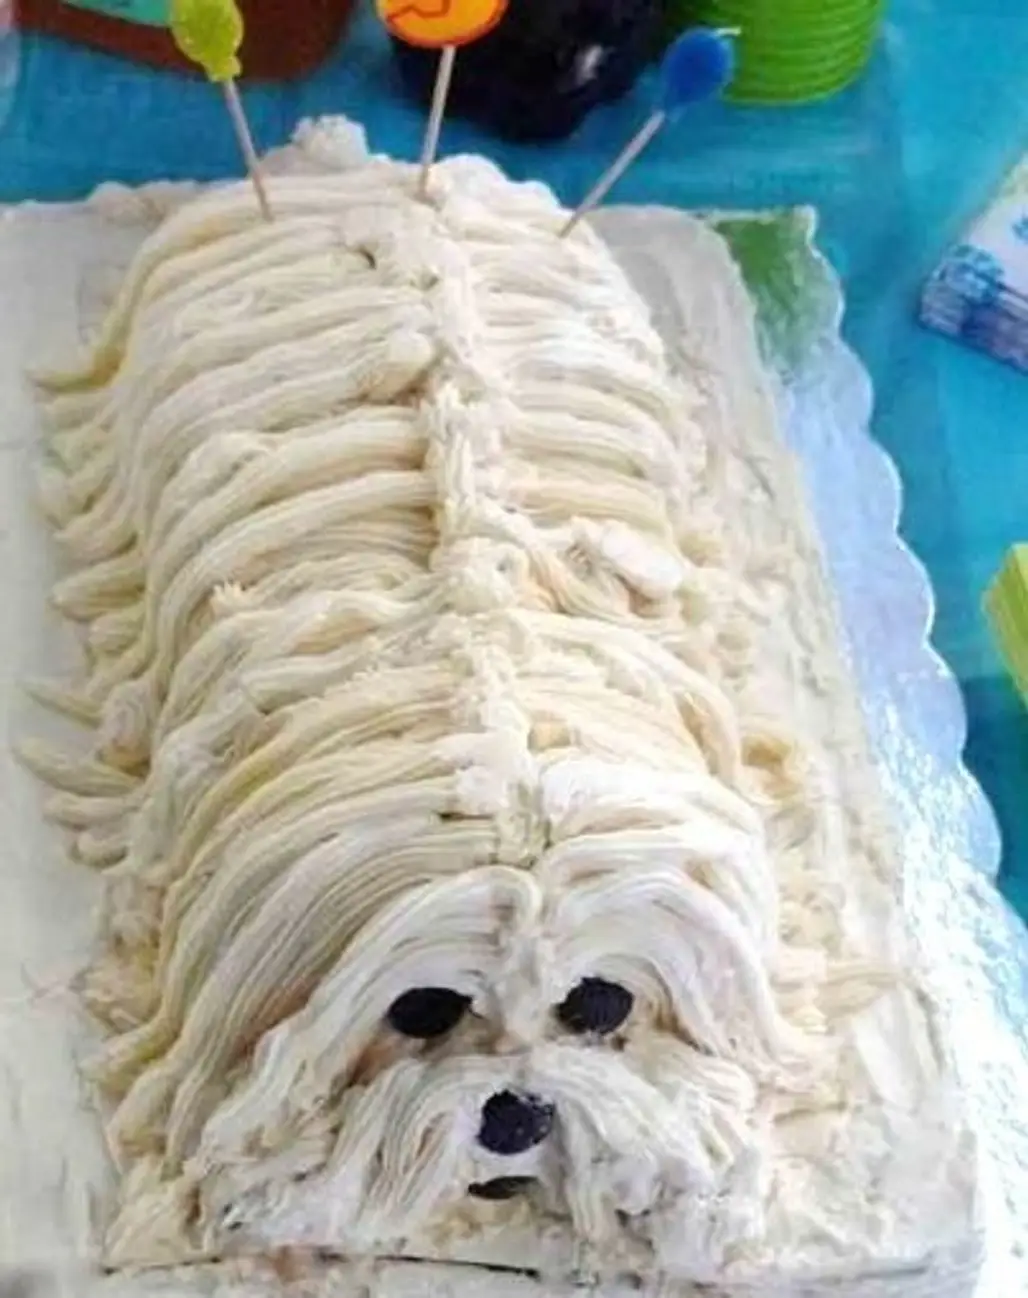 Doggie Cake